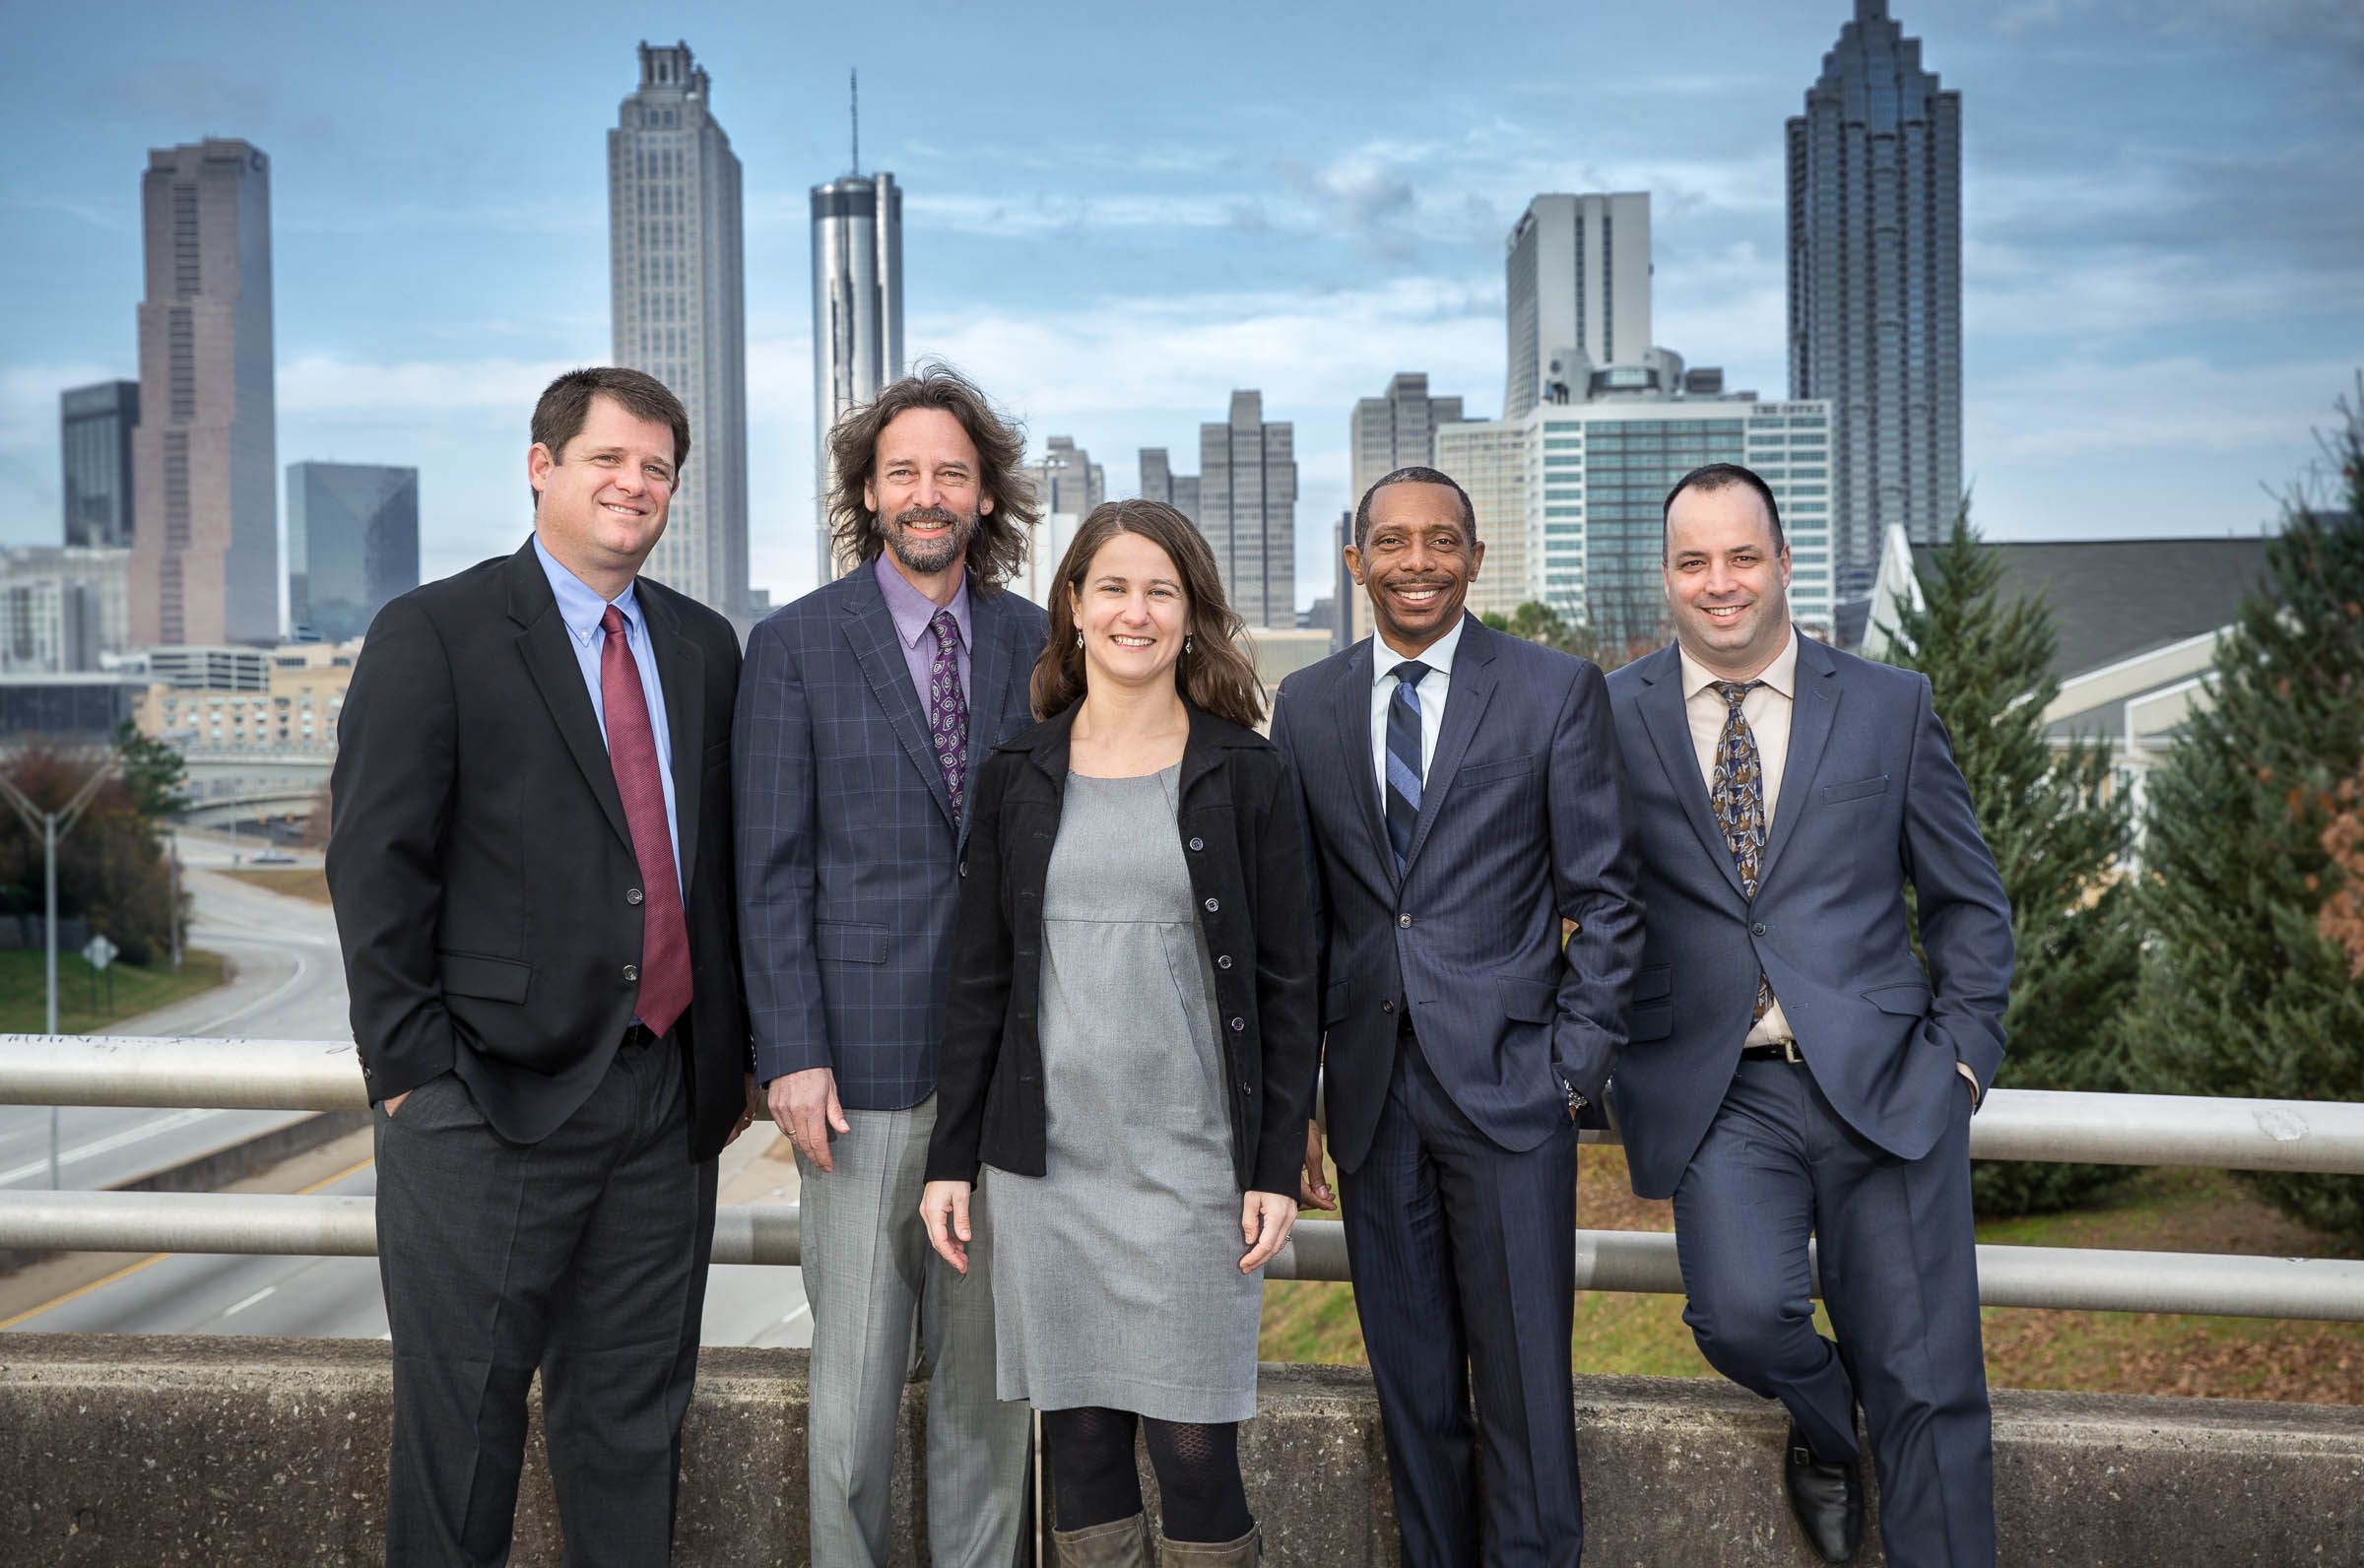 Group Portrait for Corporate Client on Atlanta Bridge